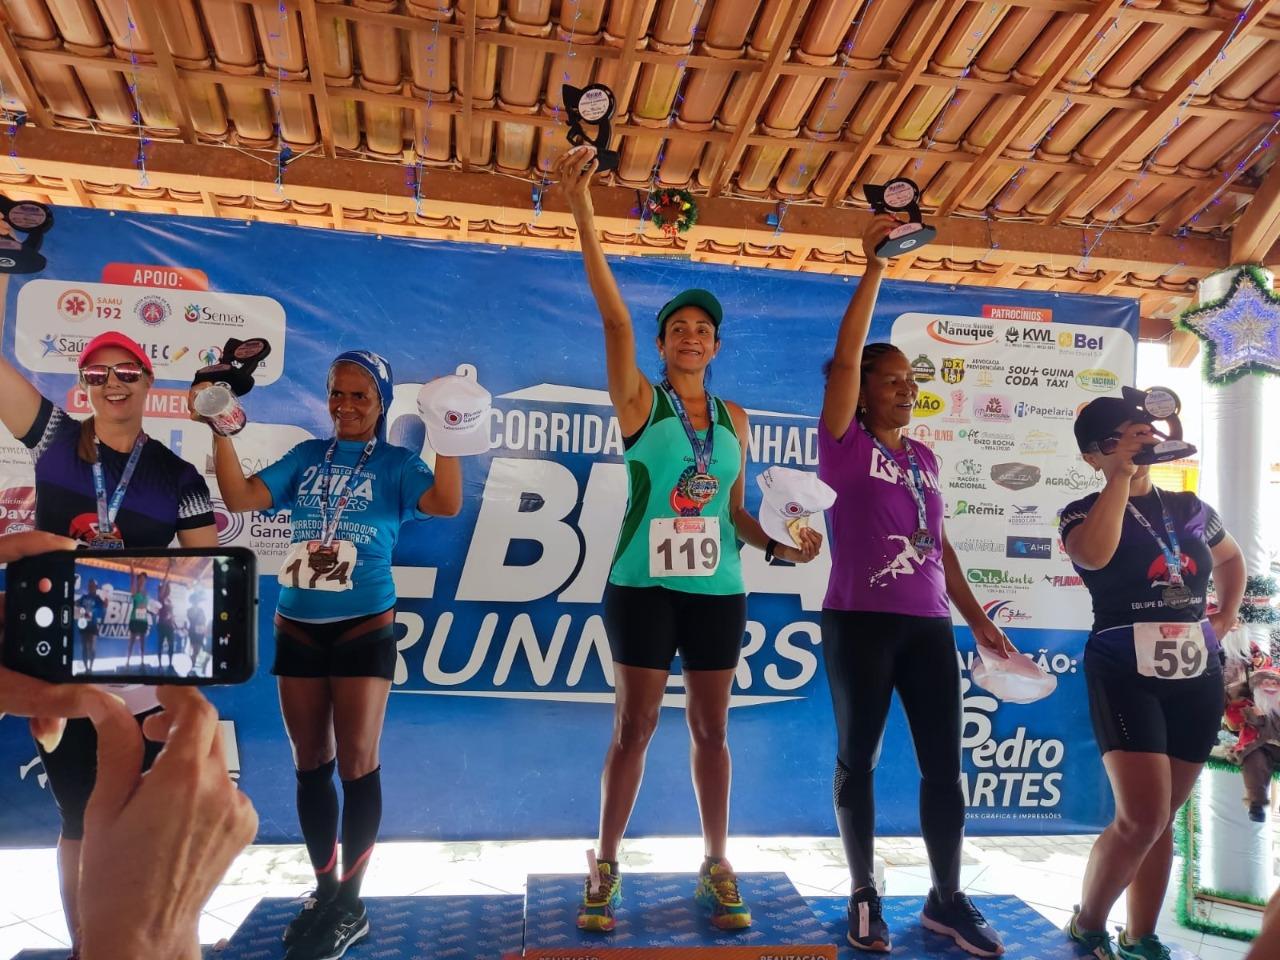 Equipe Água Preta de Atletismo de Itanhém conquista 10 pódios em Ibirapuã e ganha prêmio de segunda maior delegação da 2ª Bira Runners.